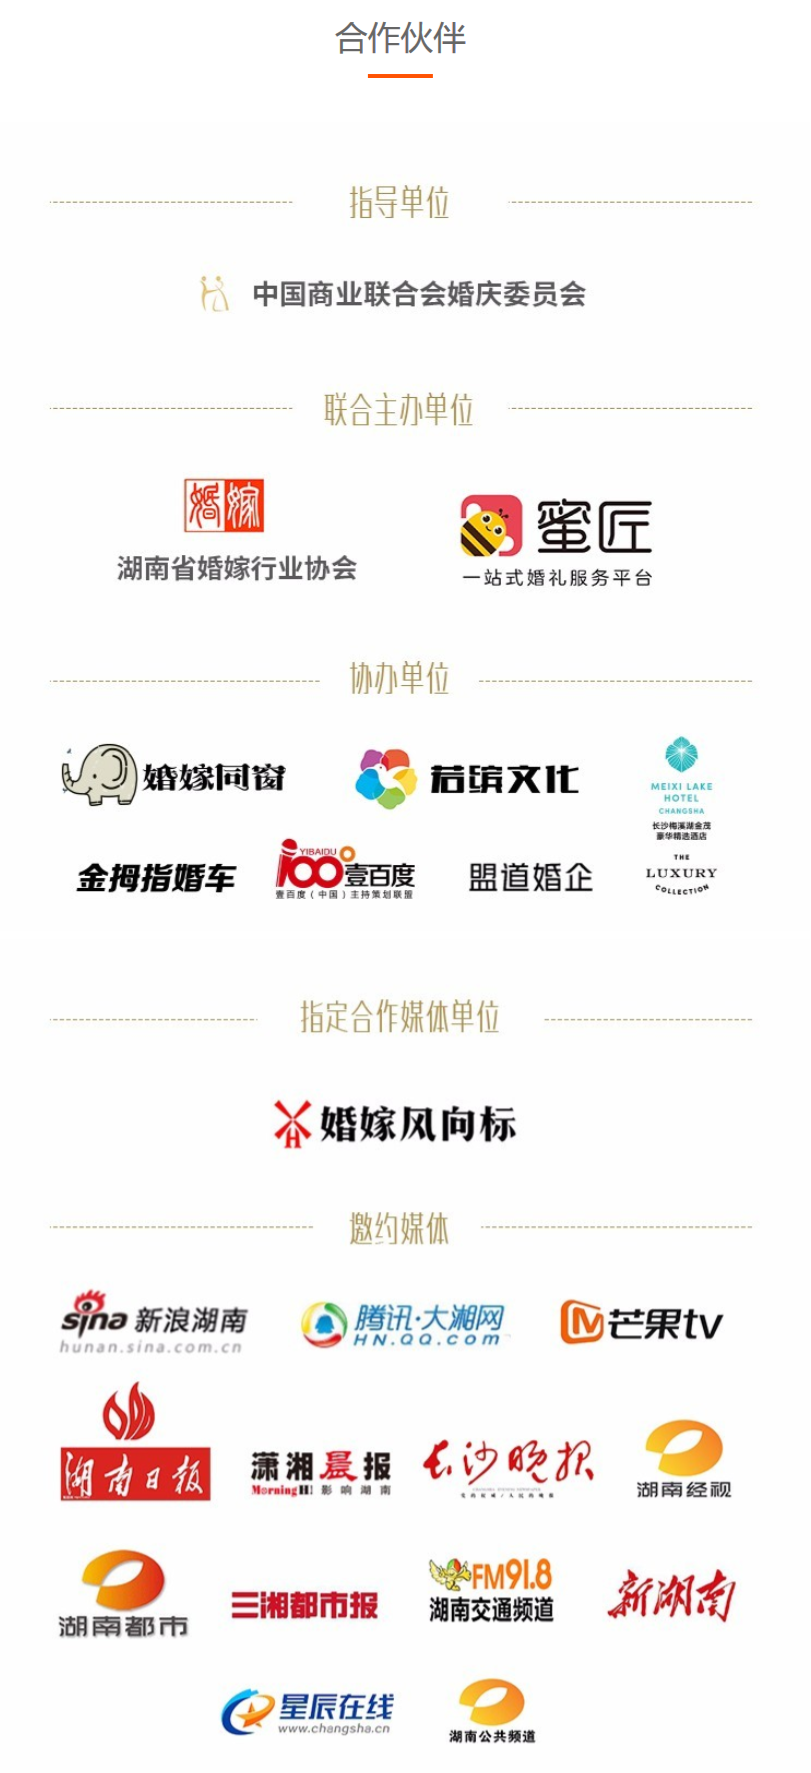 2018中国婚嫁行业互联网高峰论坛